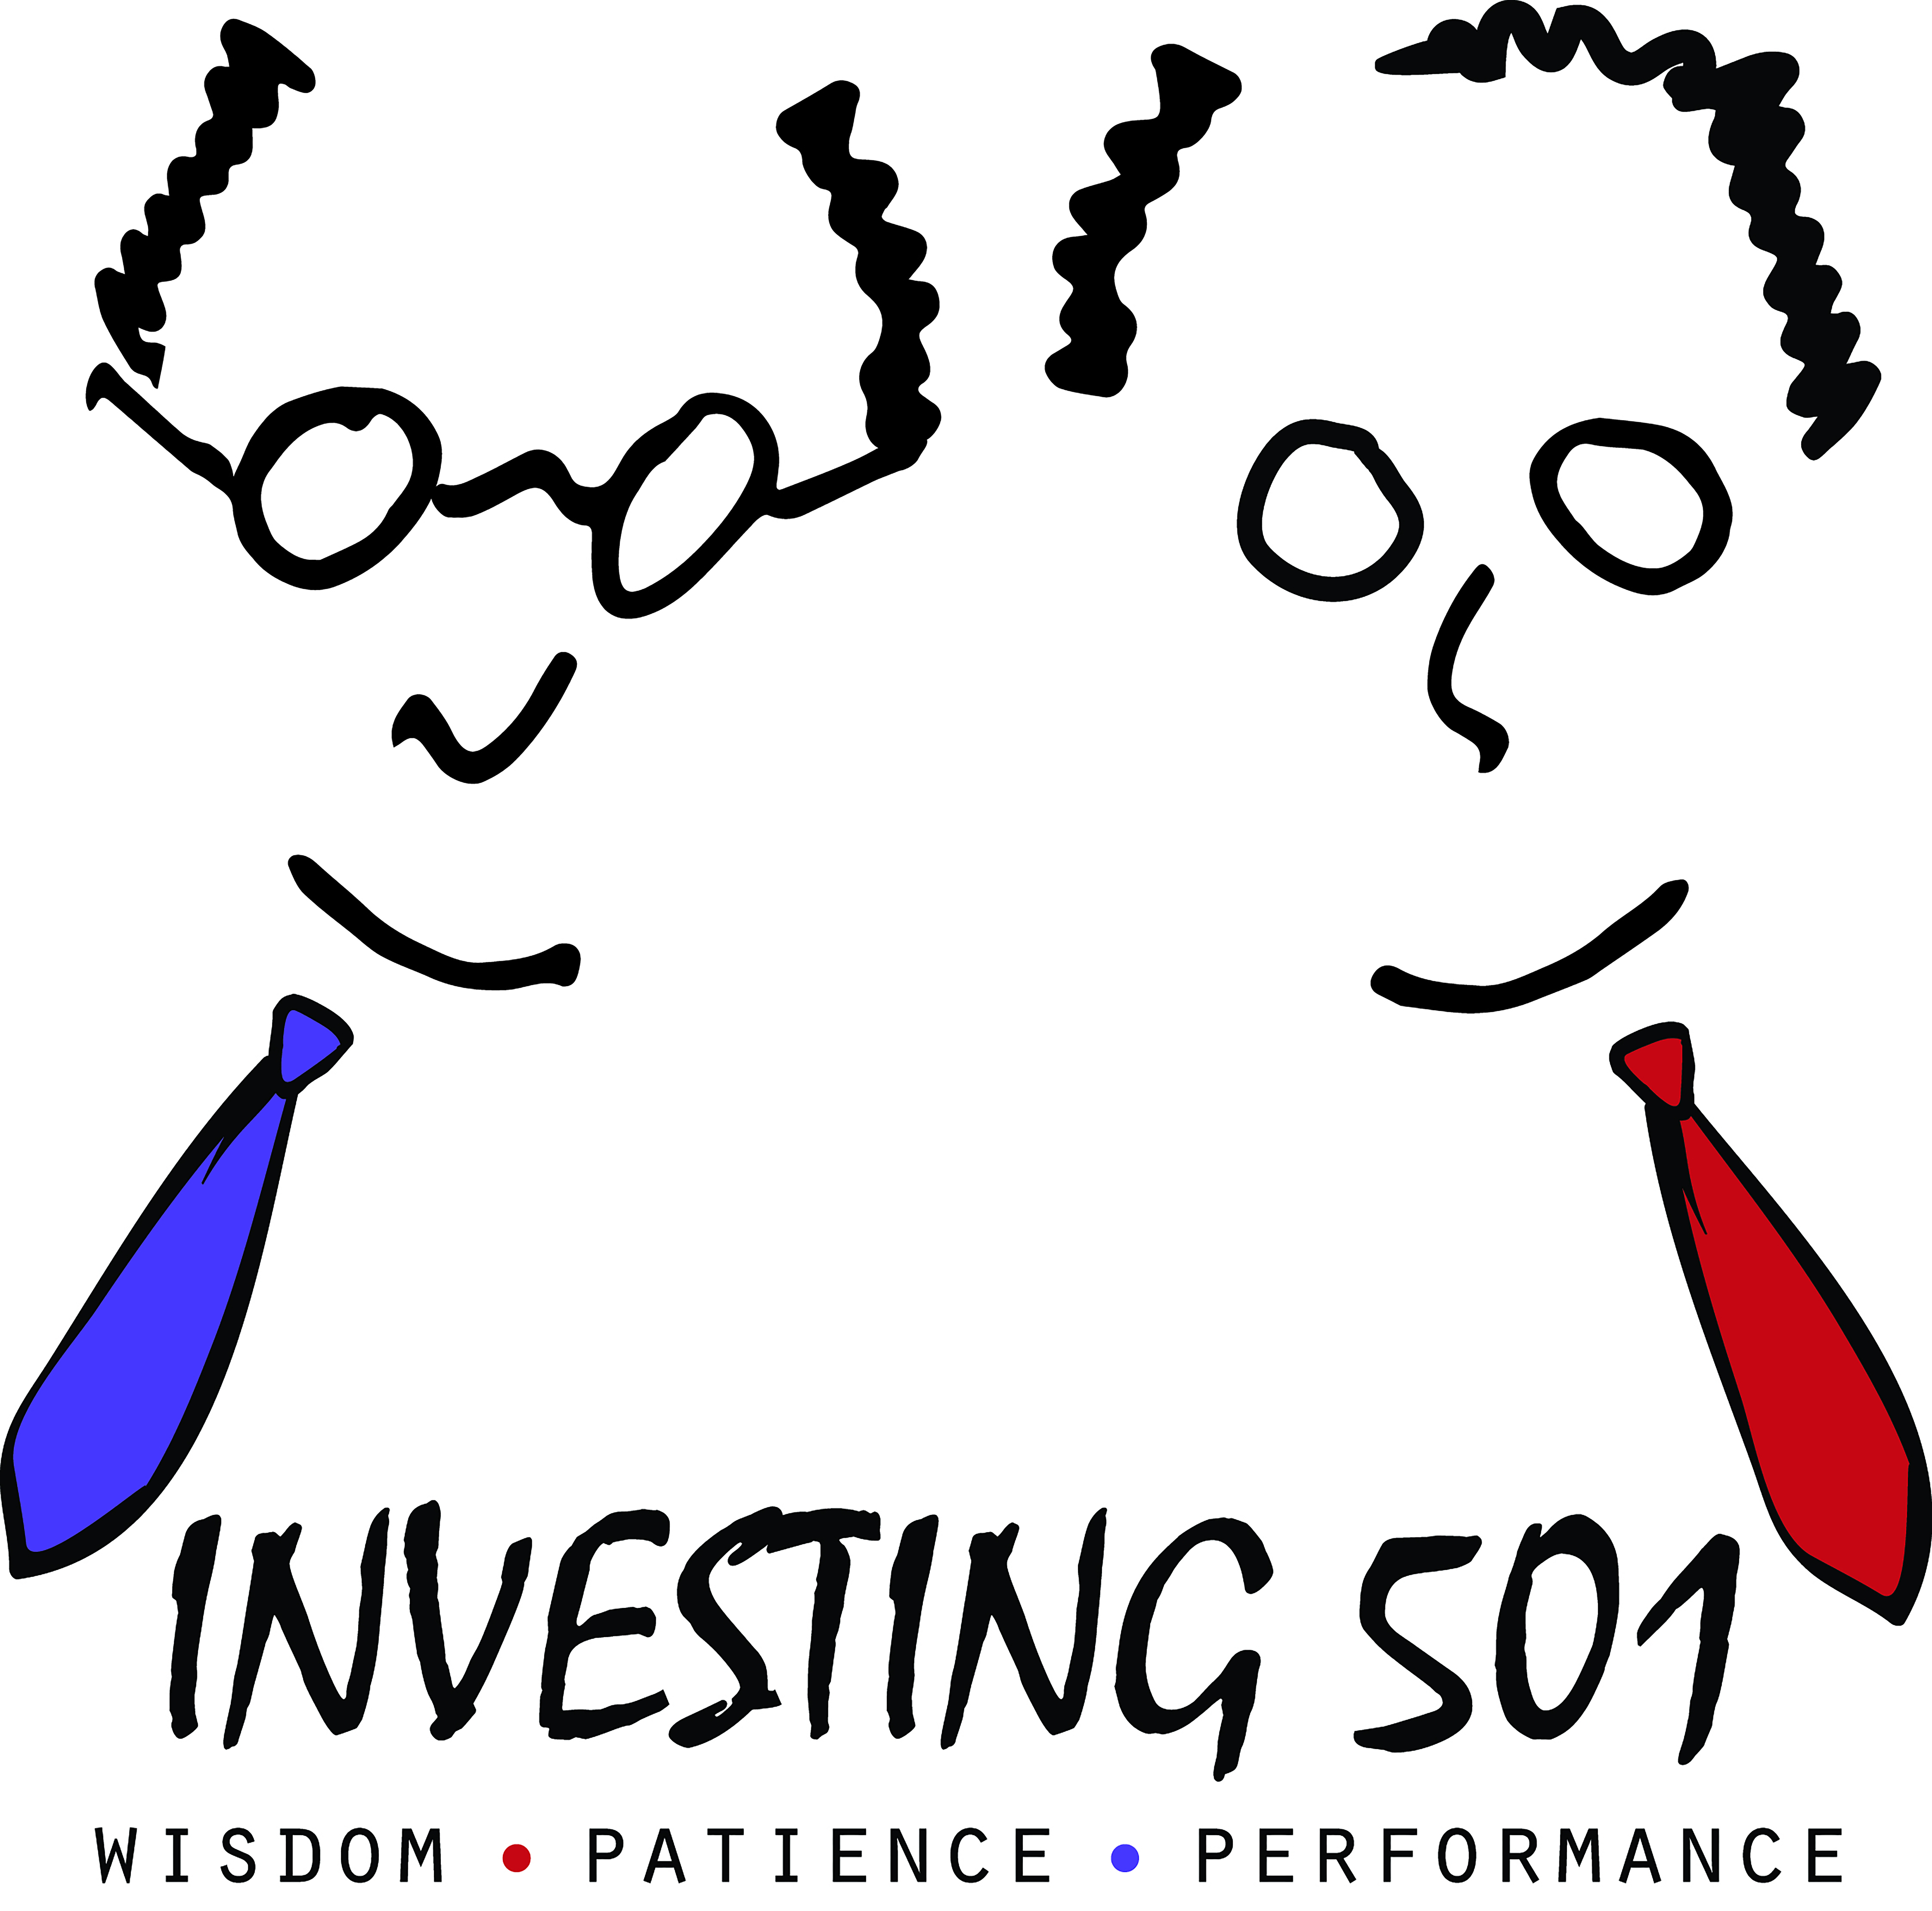 Investing501 Newsletter